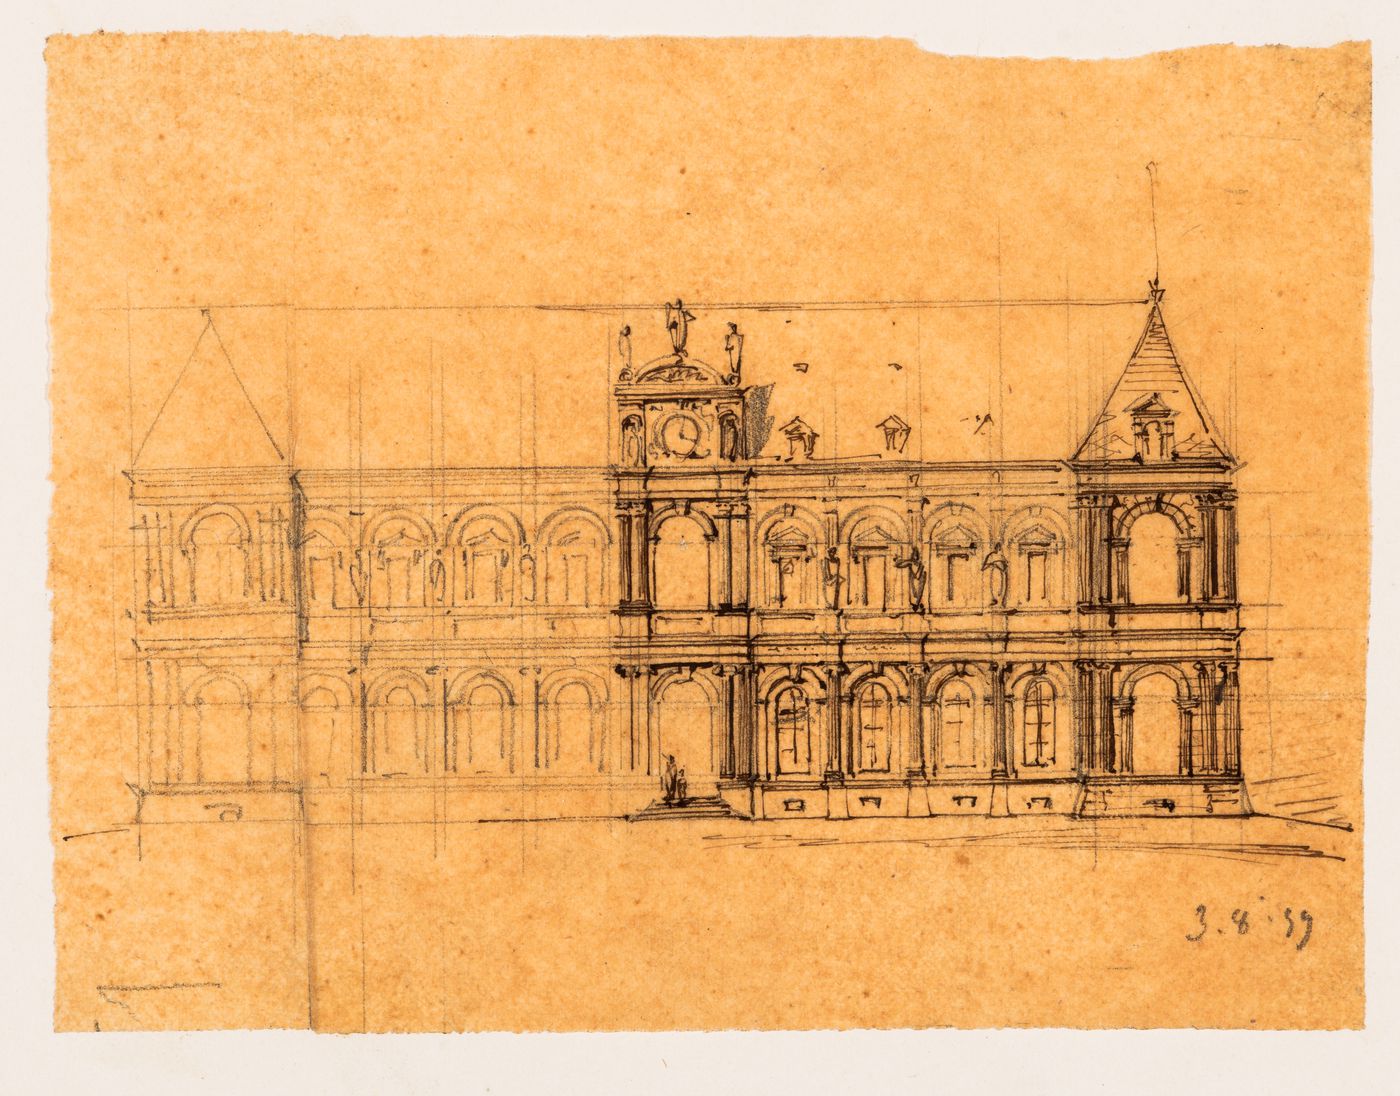 Project for a Hôtel de ville, Poitiers: Sketch elevations